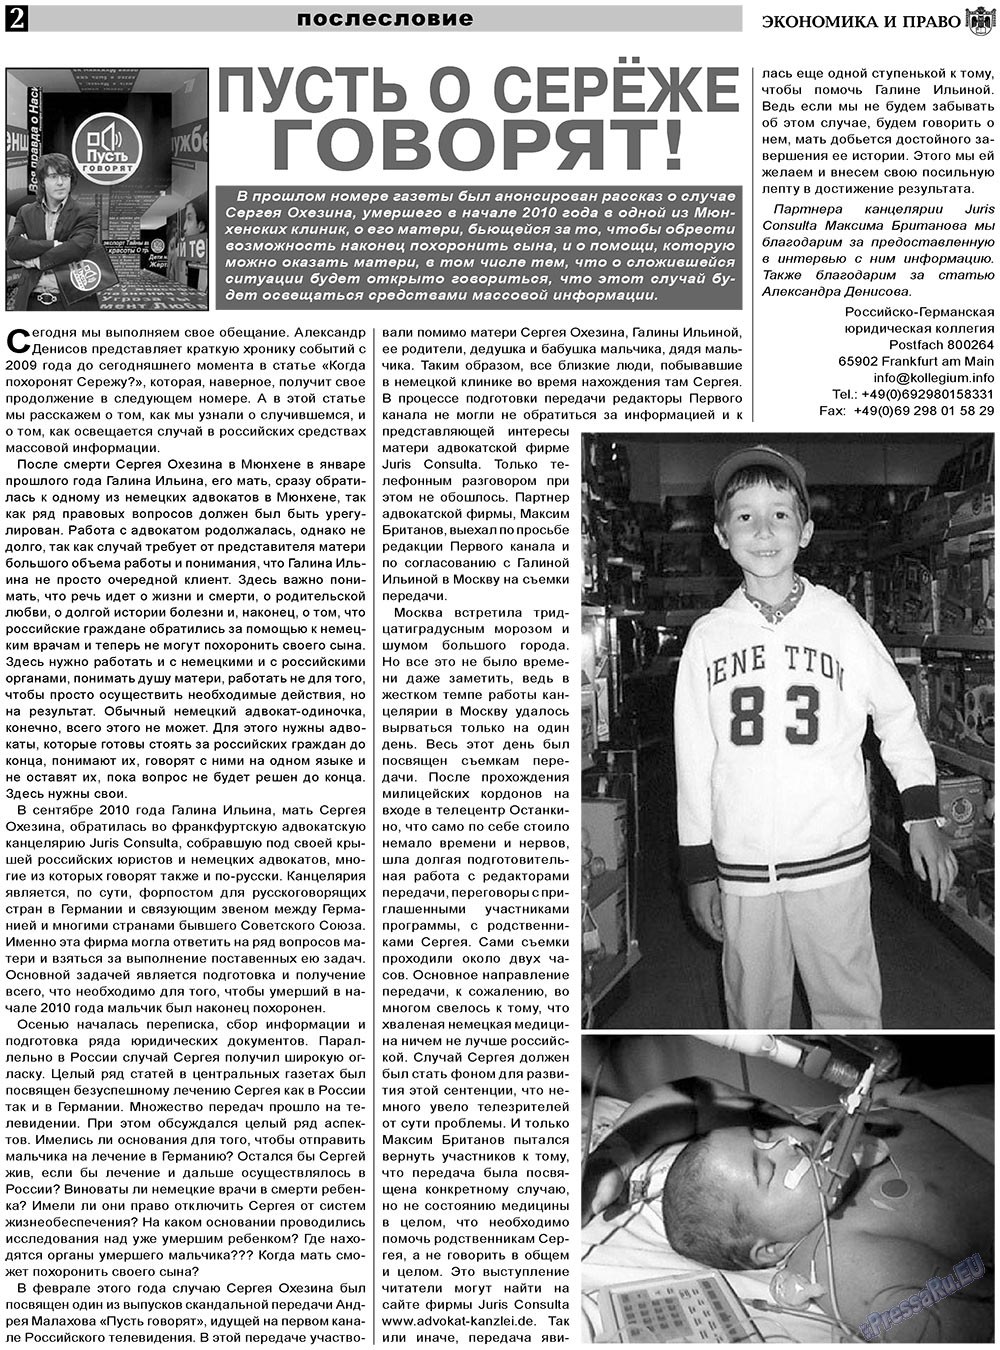 Экономика и право, газета. 2011 №4 стр.2